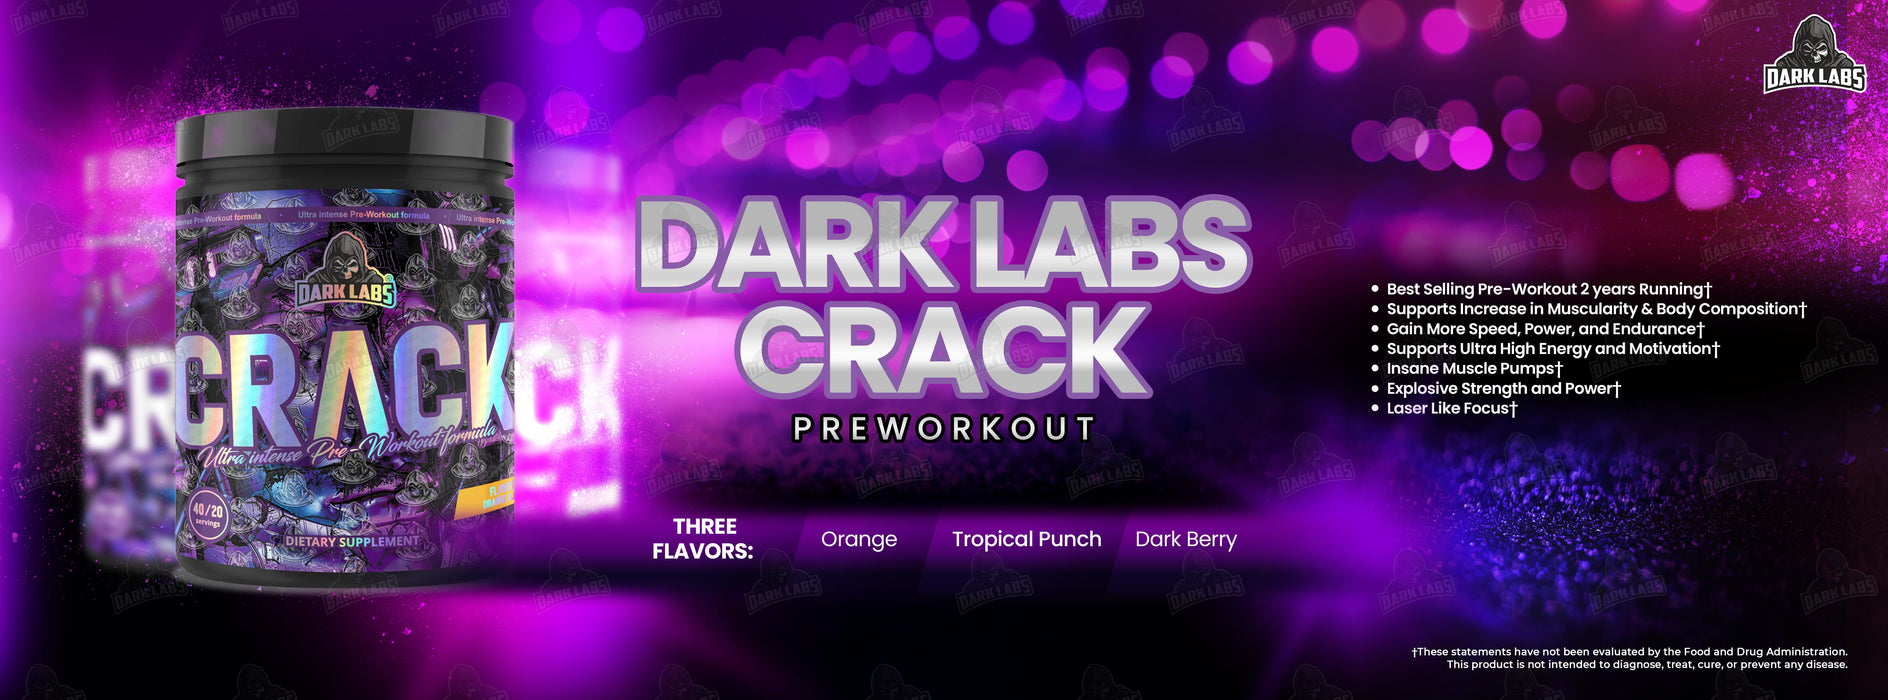 Dark Labs Crack Pre-Workout